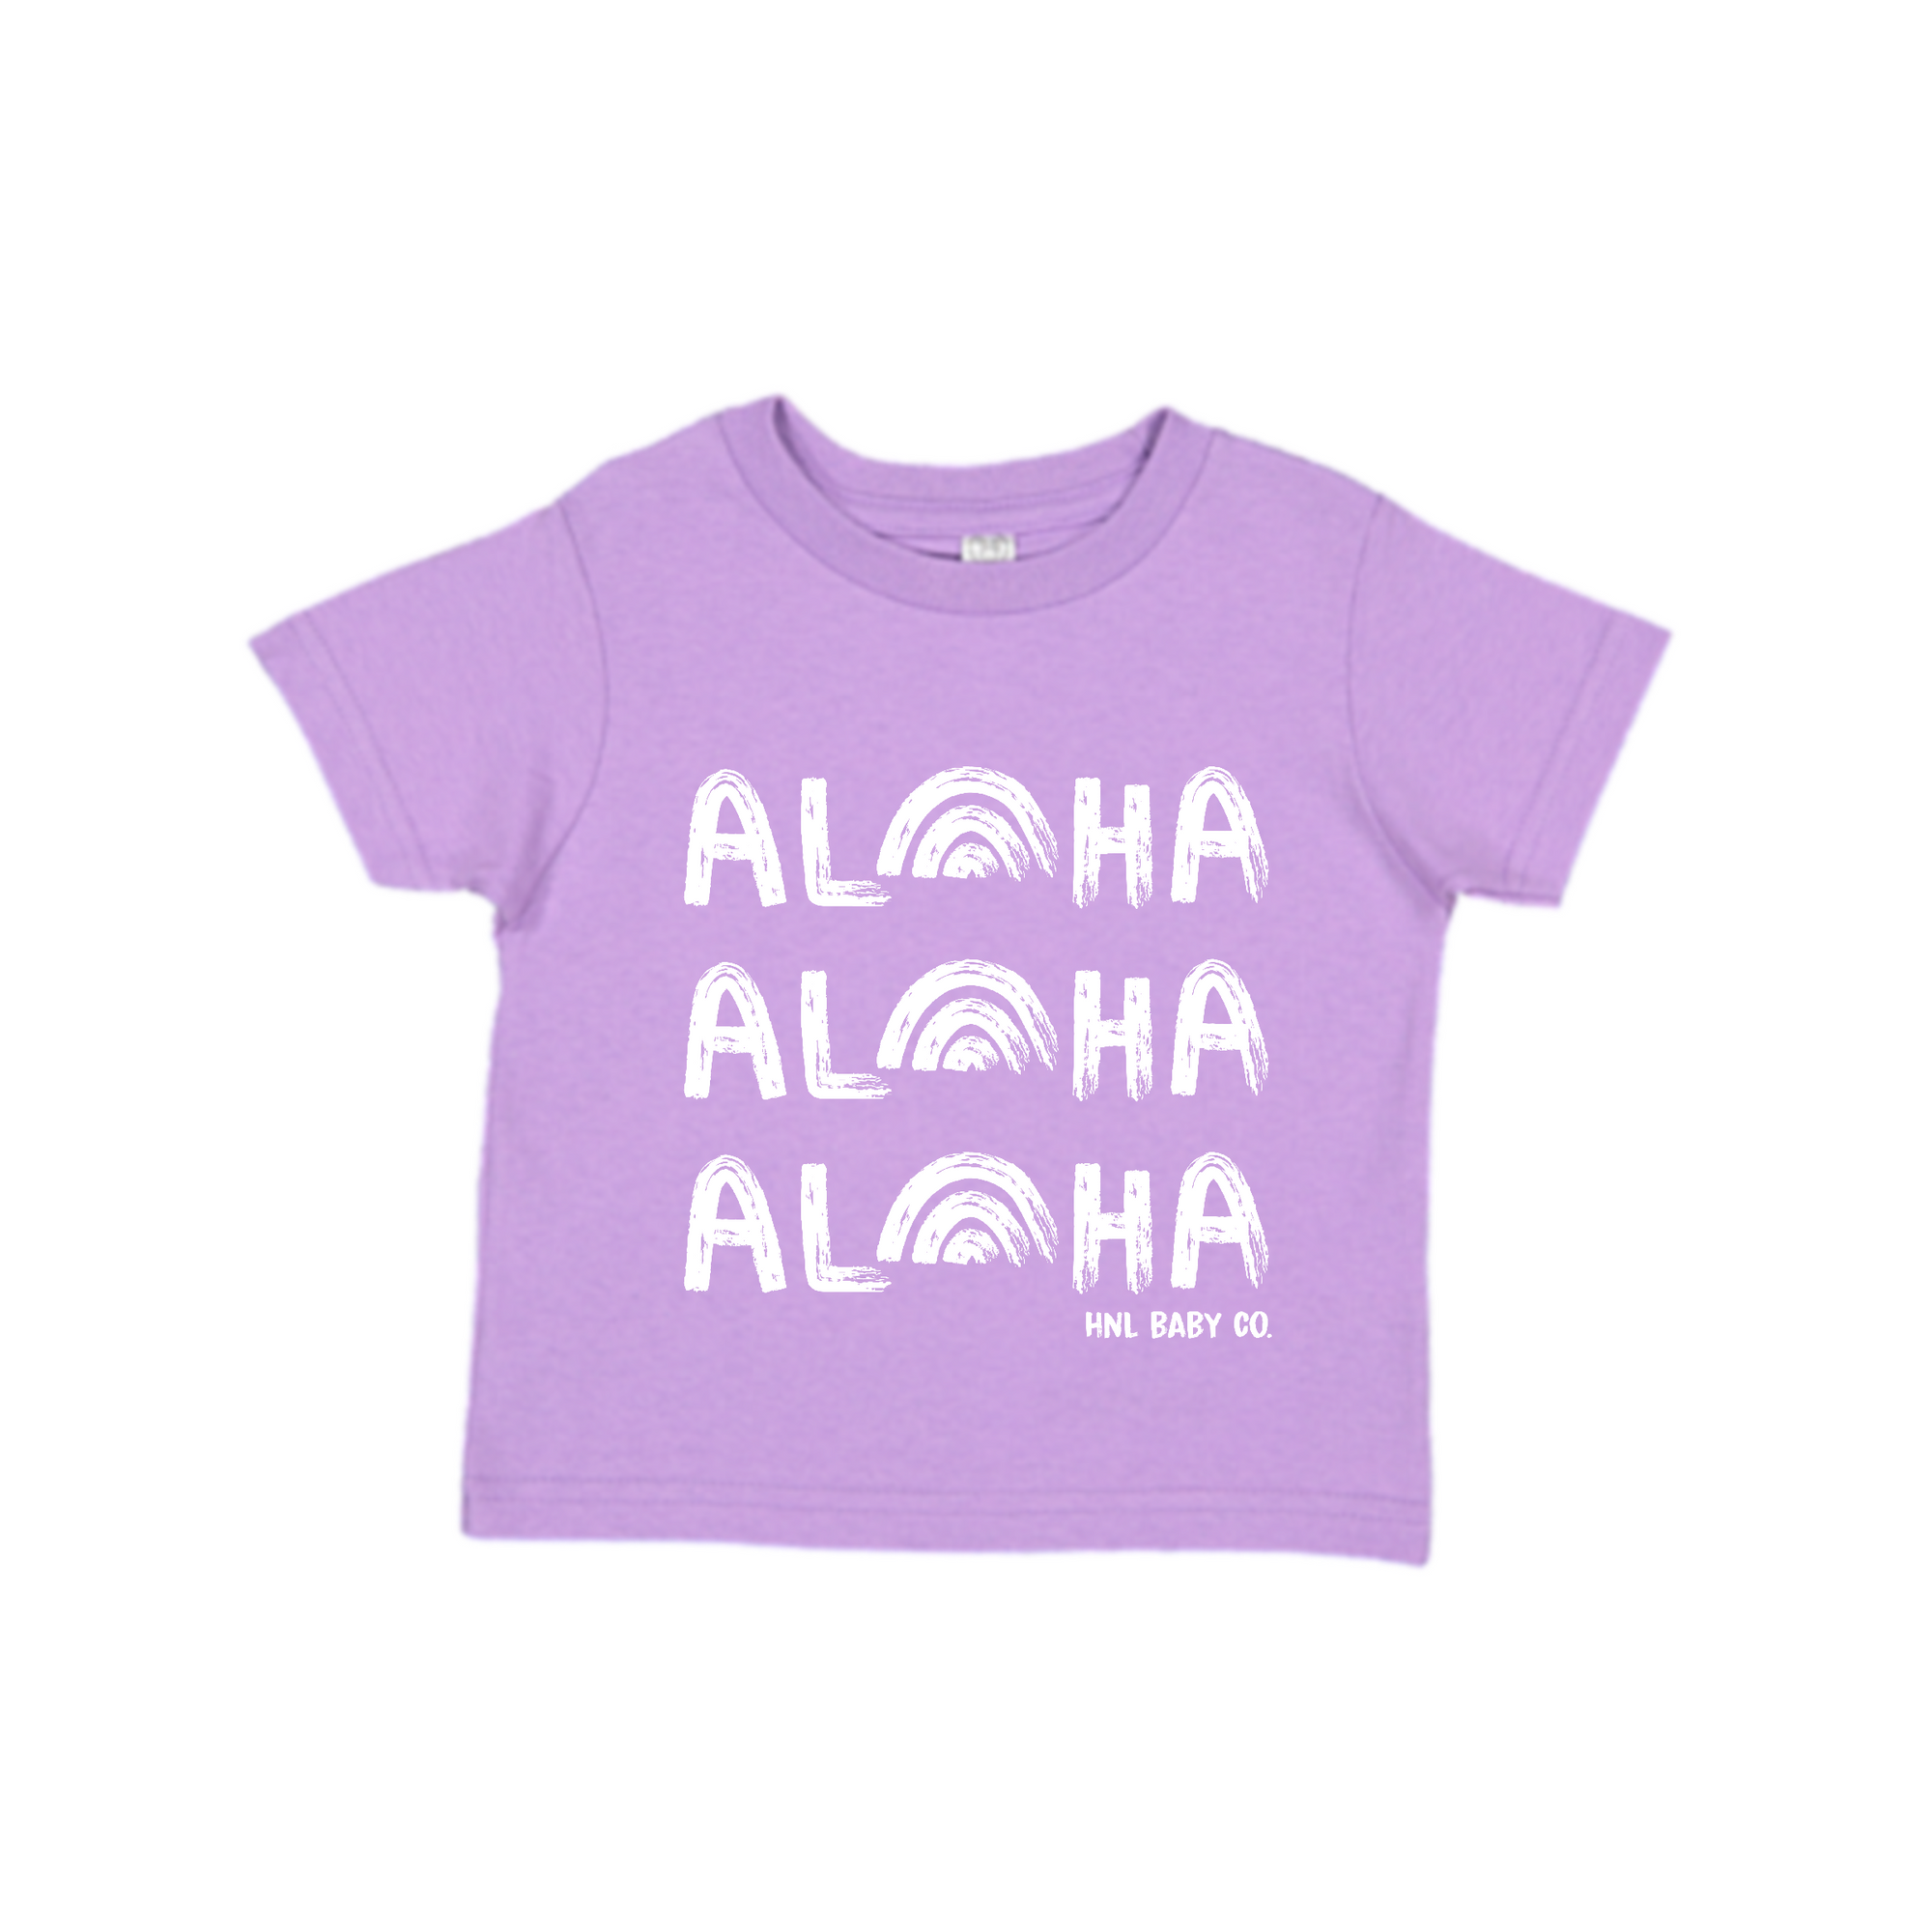 Aloha, Aloha, Aloha Tee - Lavender